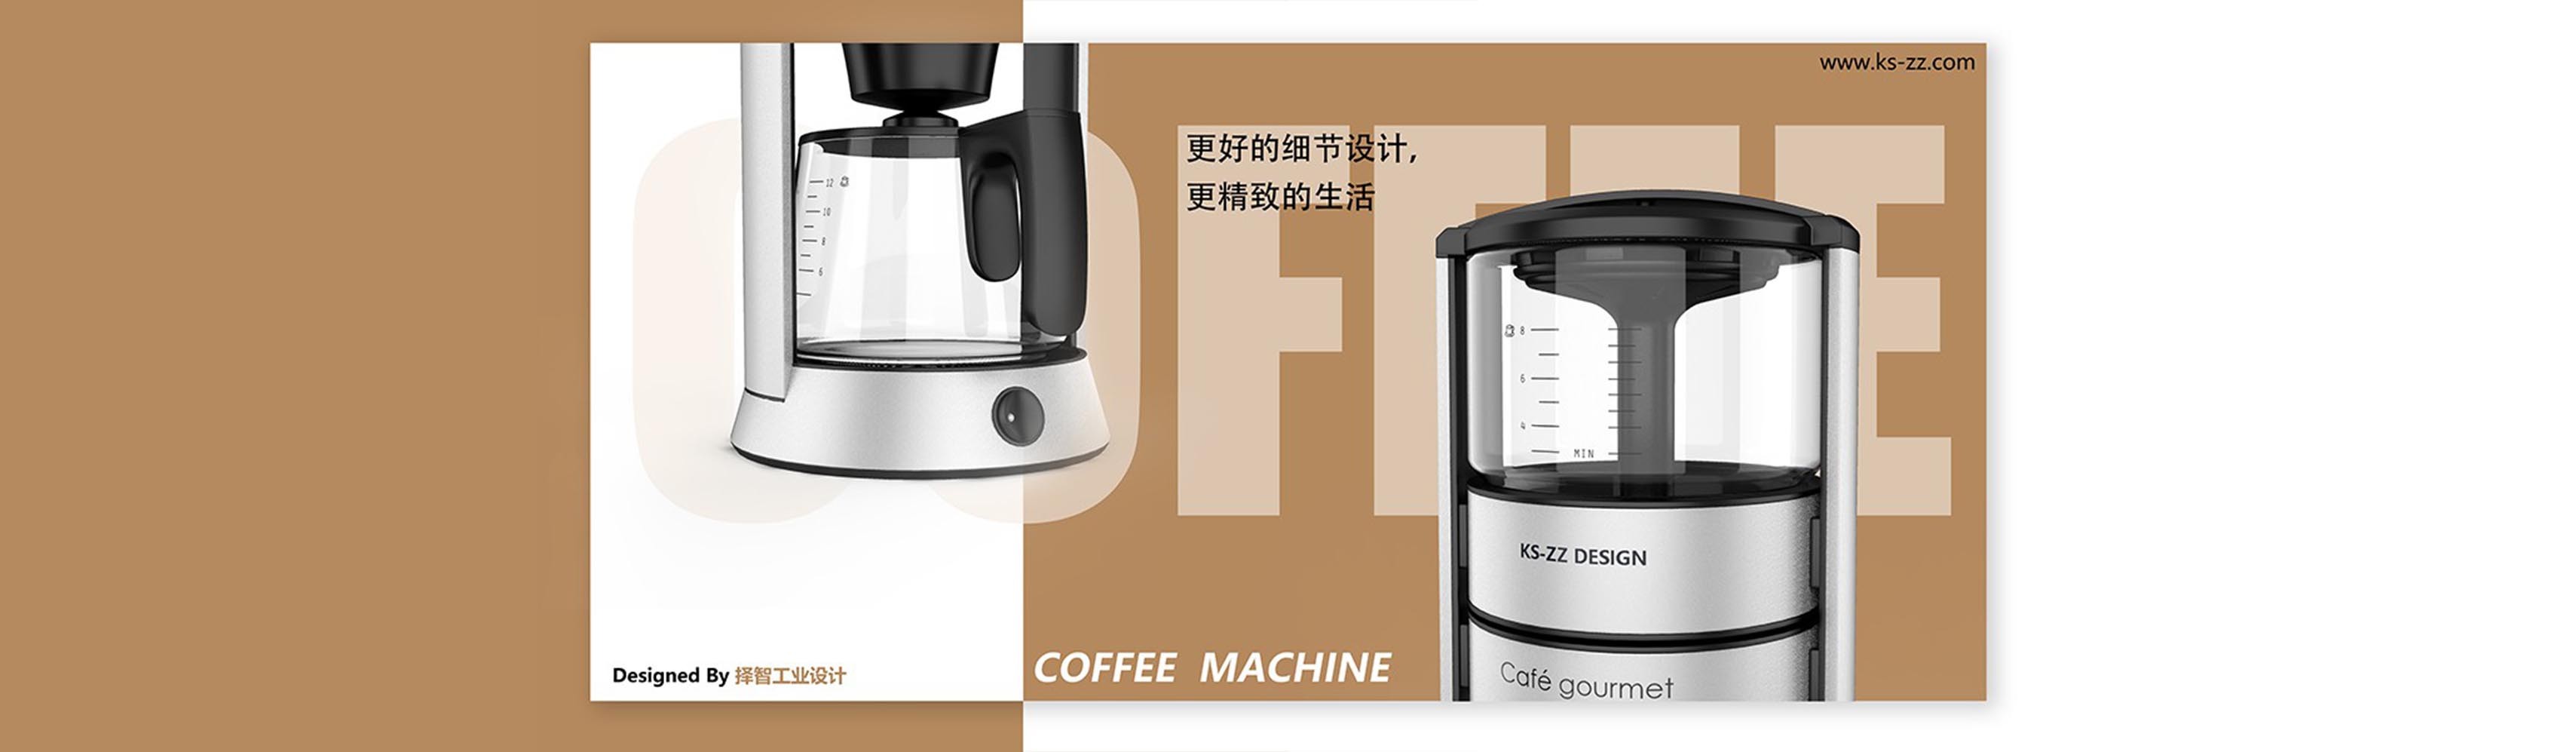 上海苏州产品设计 工业产品外观设计 结构设计 智能咖啡机结构设计